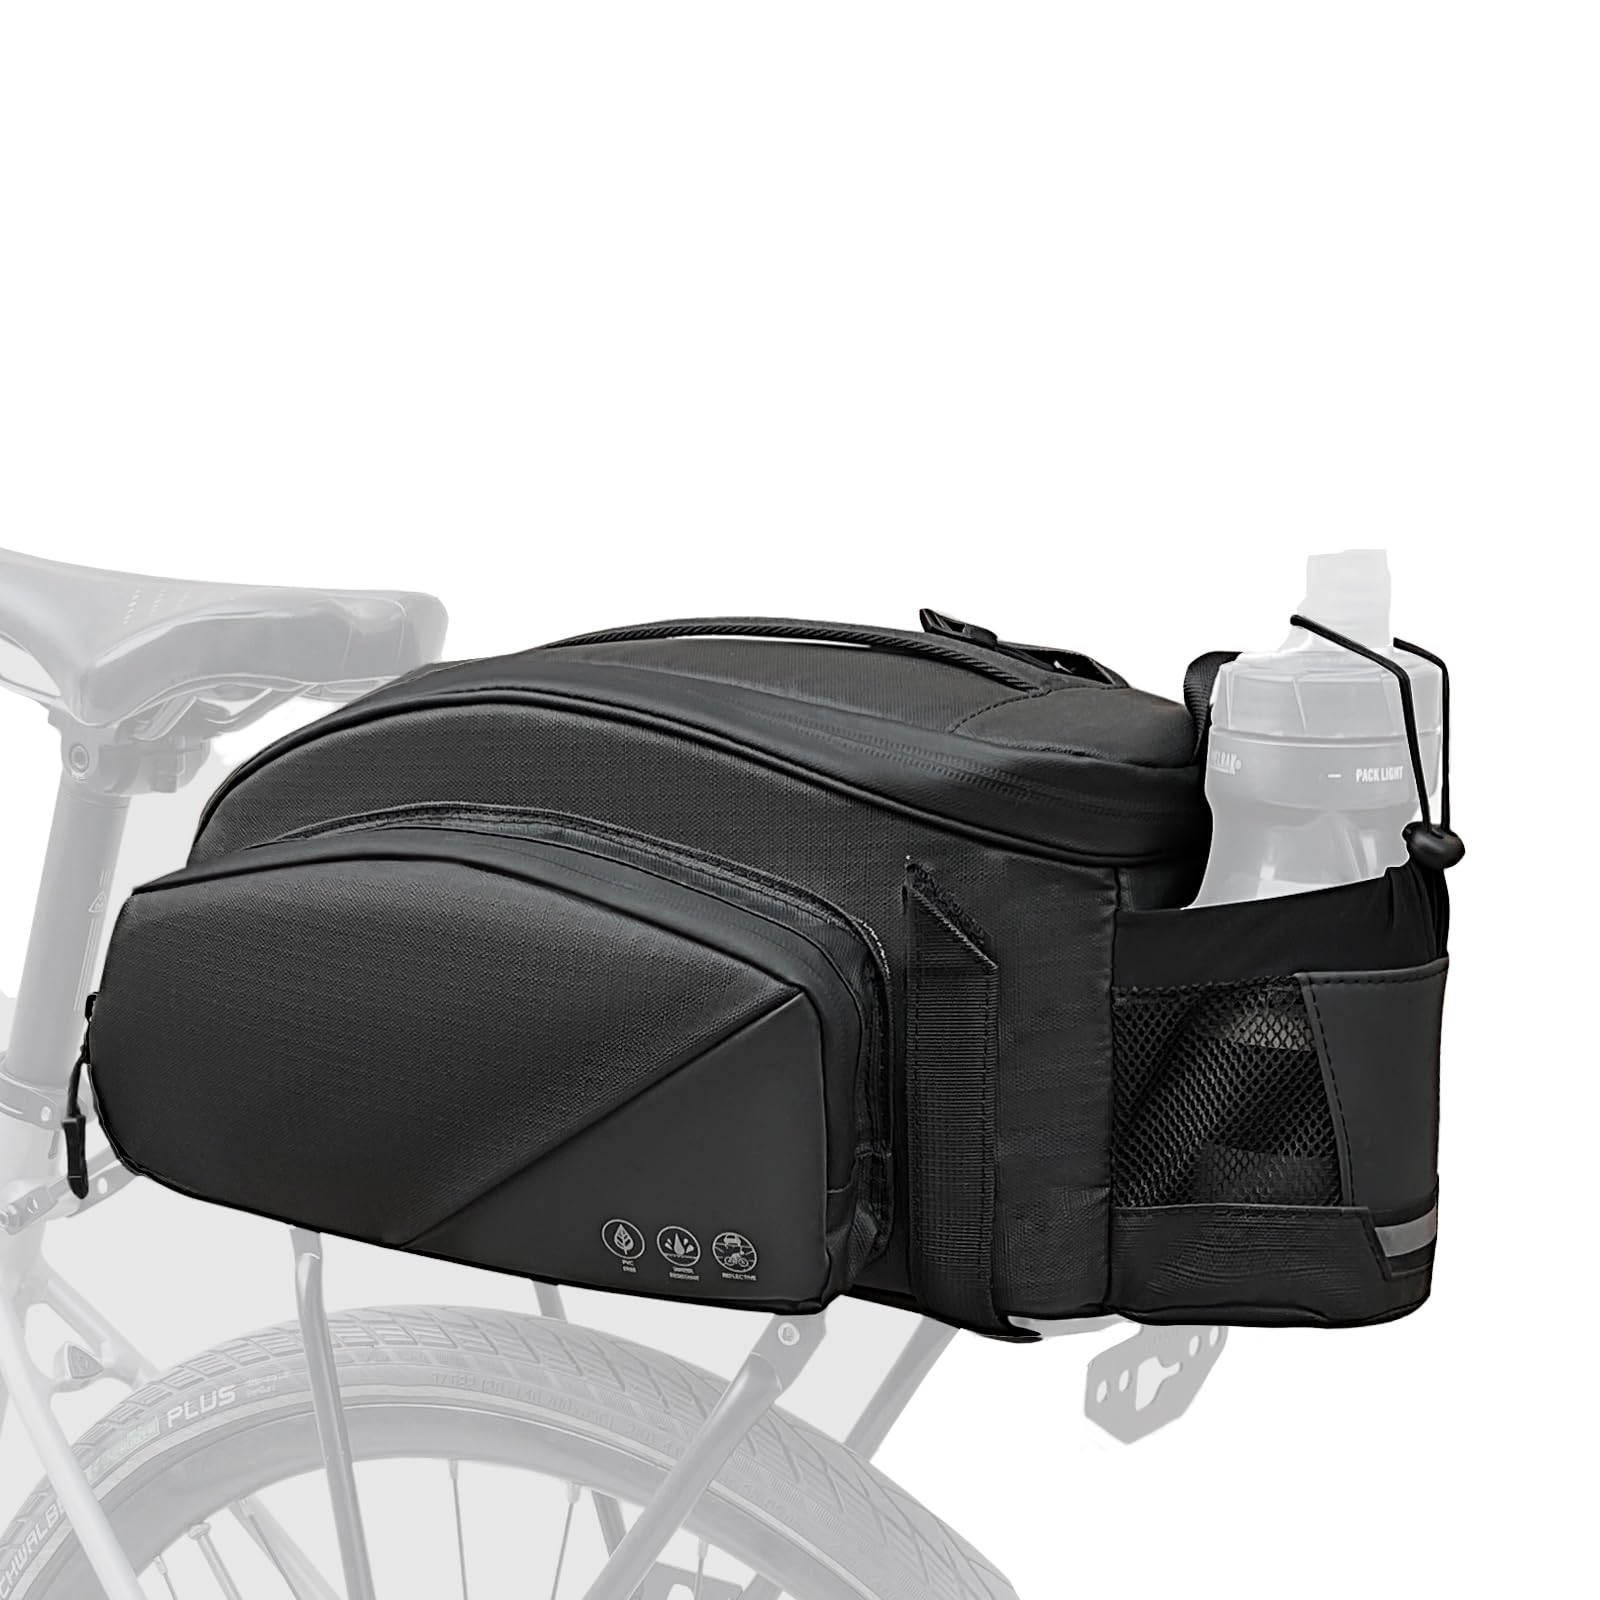 LIAMERHE Fahrradtasche 12L Fahrradtasche für Gepäckträger mit Tragegriff und Schultergurt Wasserdicht Reflektierend Gepäckträgertasche Multifunktionale 3 in 1 Fahrradtasche Gepäckträger Hinten von LIAMERHE